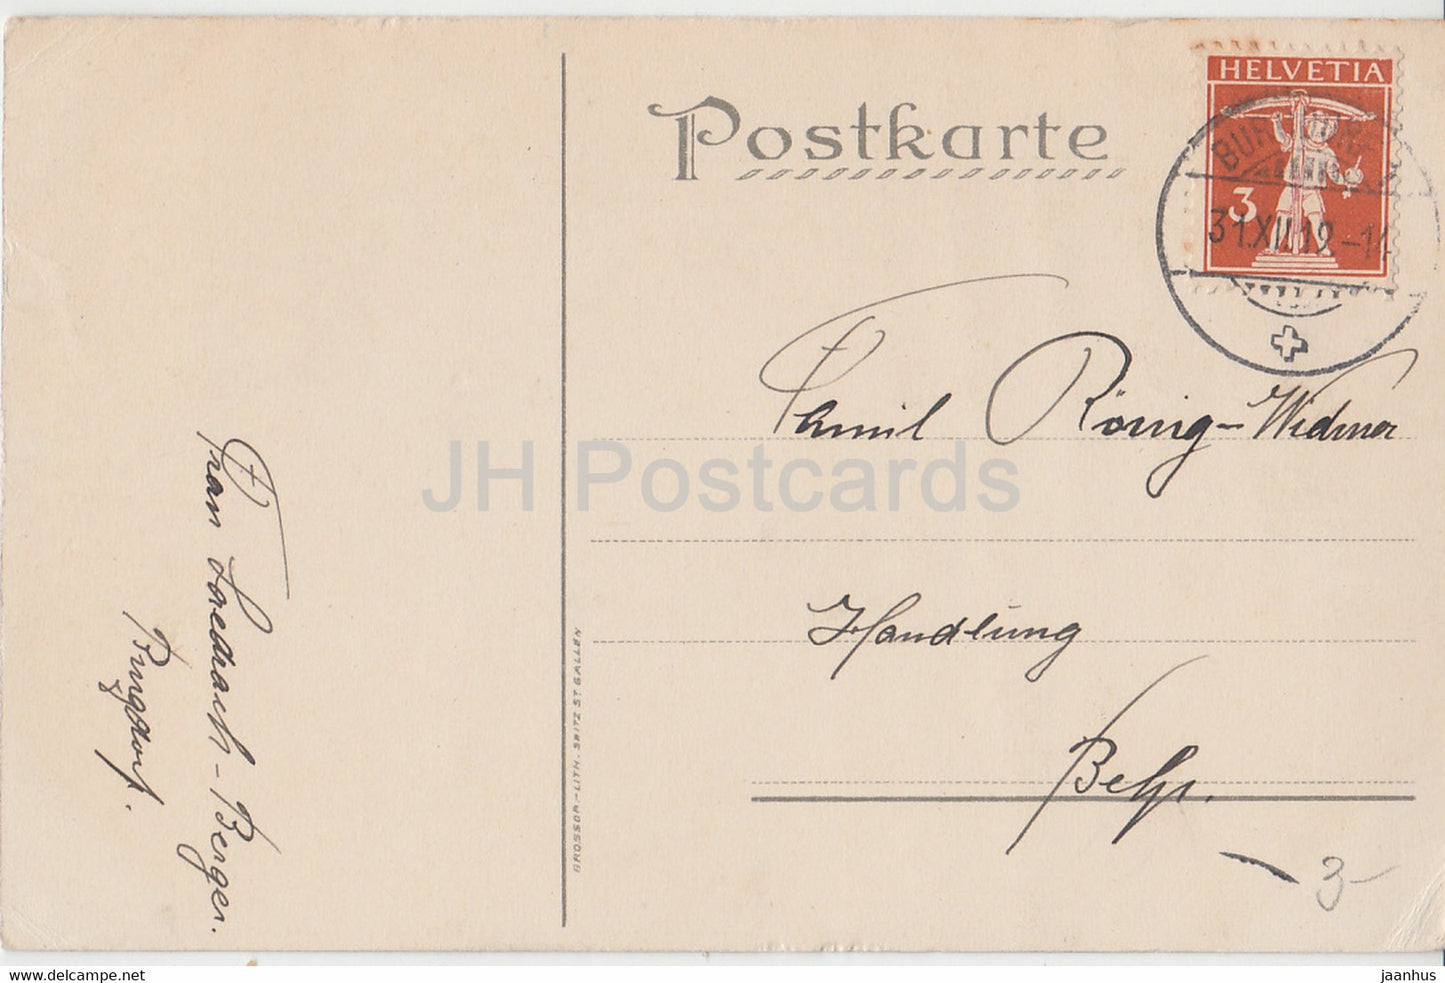 Neujahrsgrußkarte - Herzlichen Glückwunsch zum Neuen Jahre - Grossop - alte Postkarte - 1919 - Schweiz - gebraucht